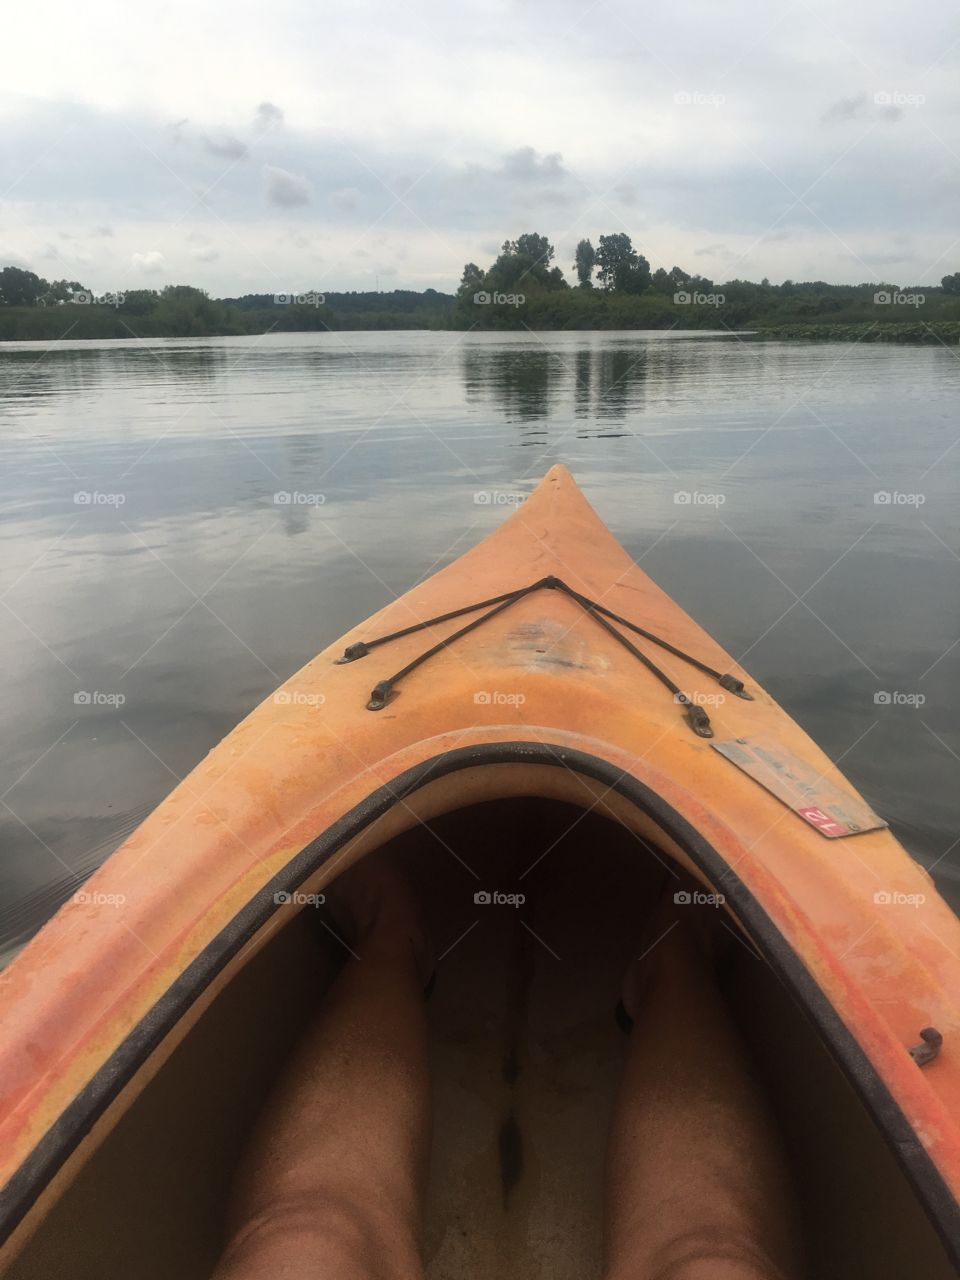 Kayaking the day away